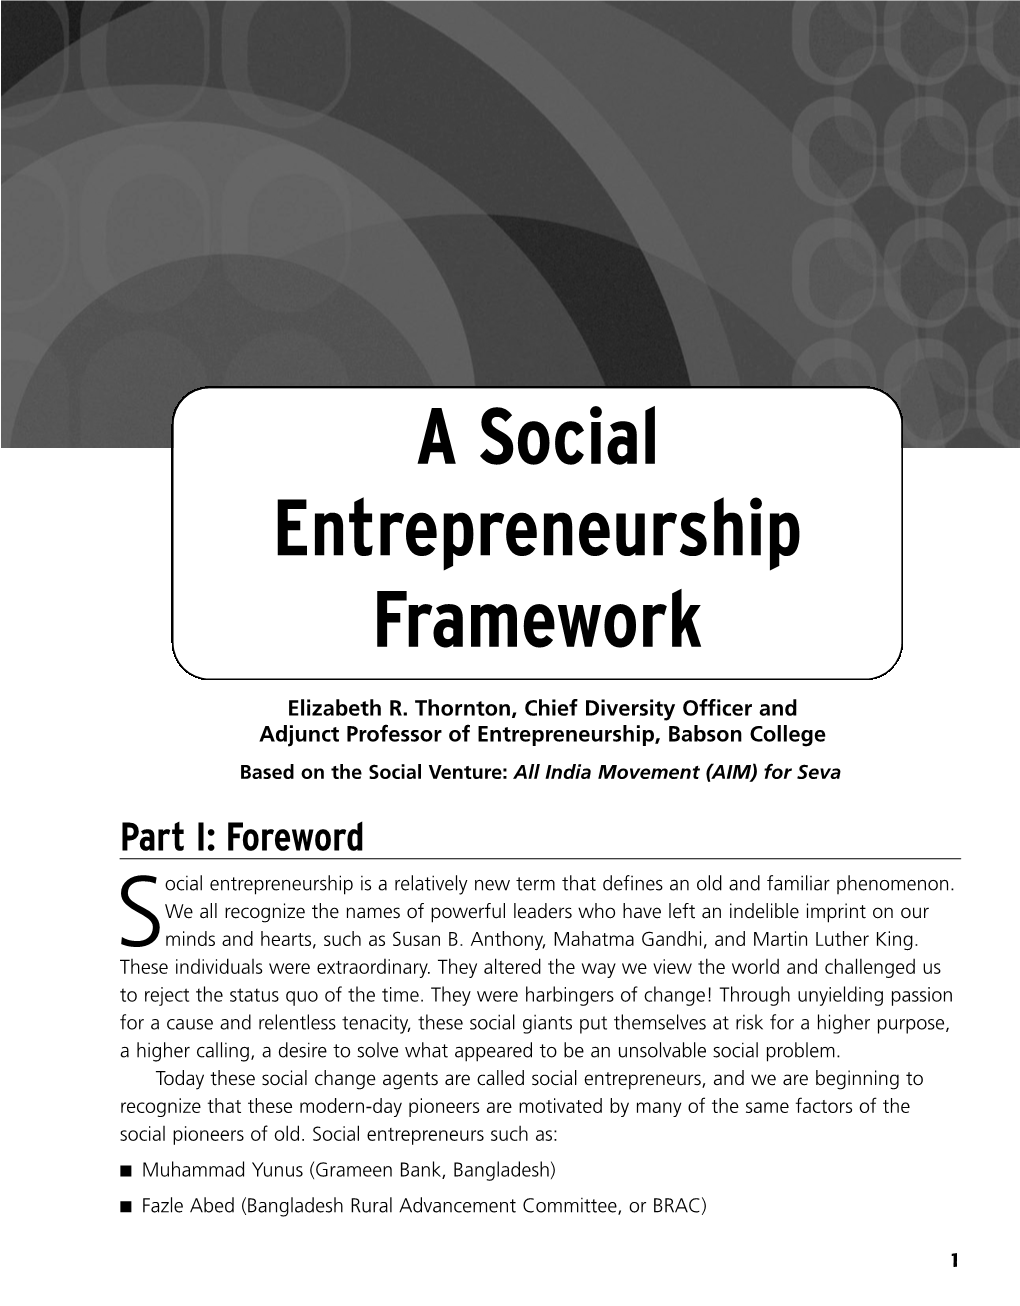 A Social Entrepreneurship Framework